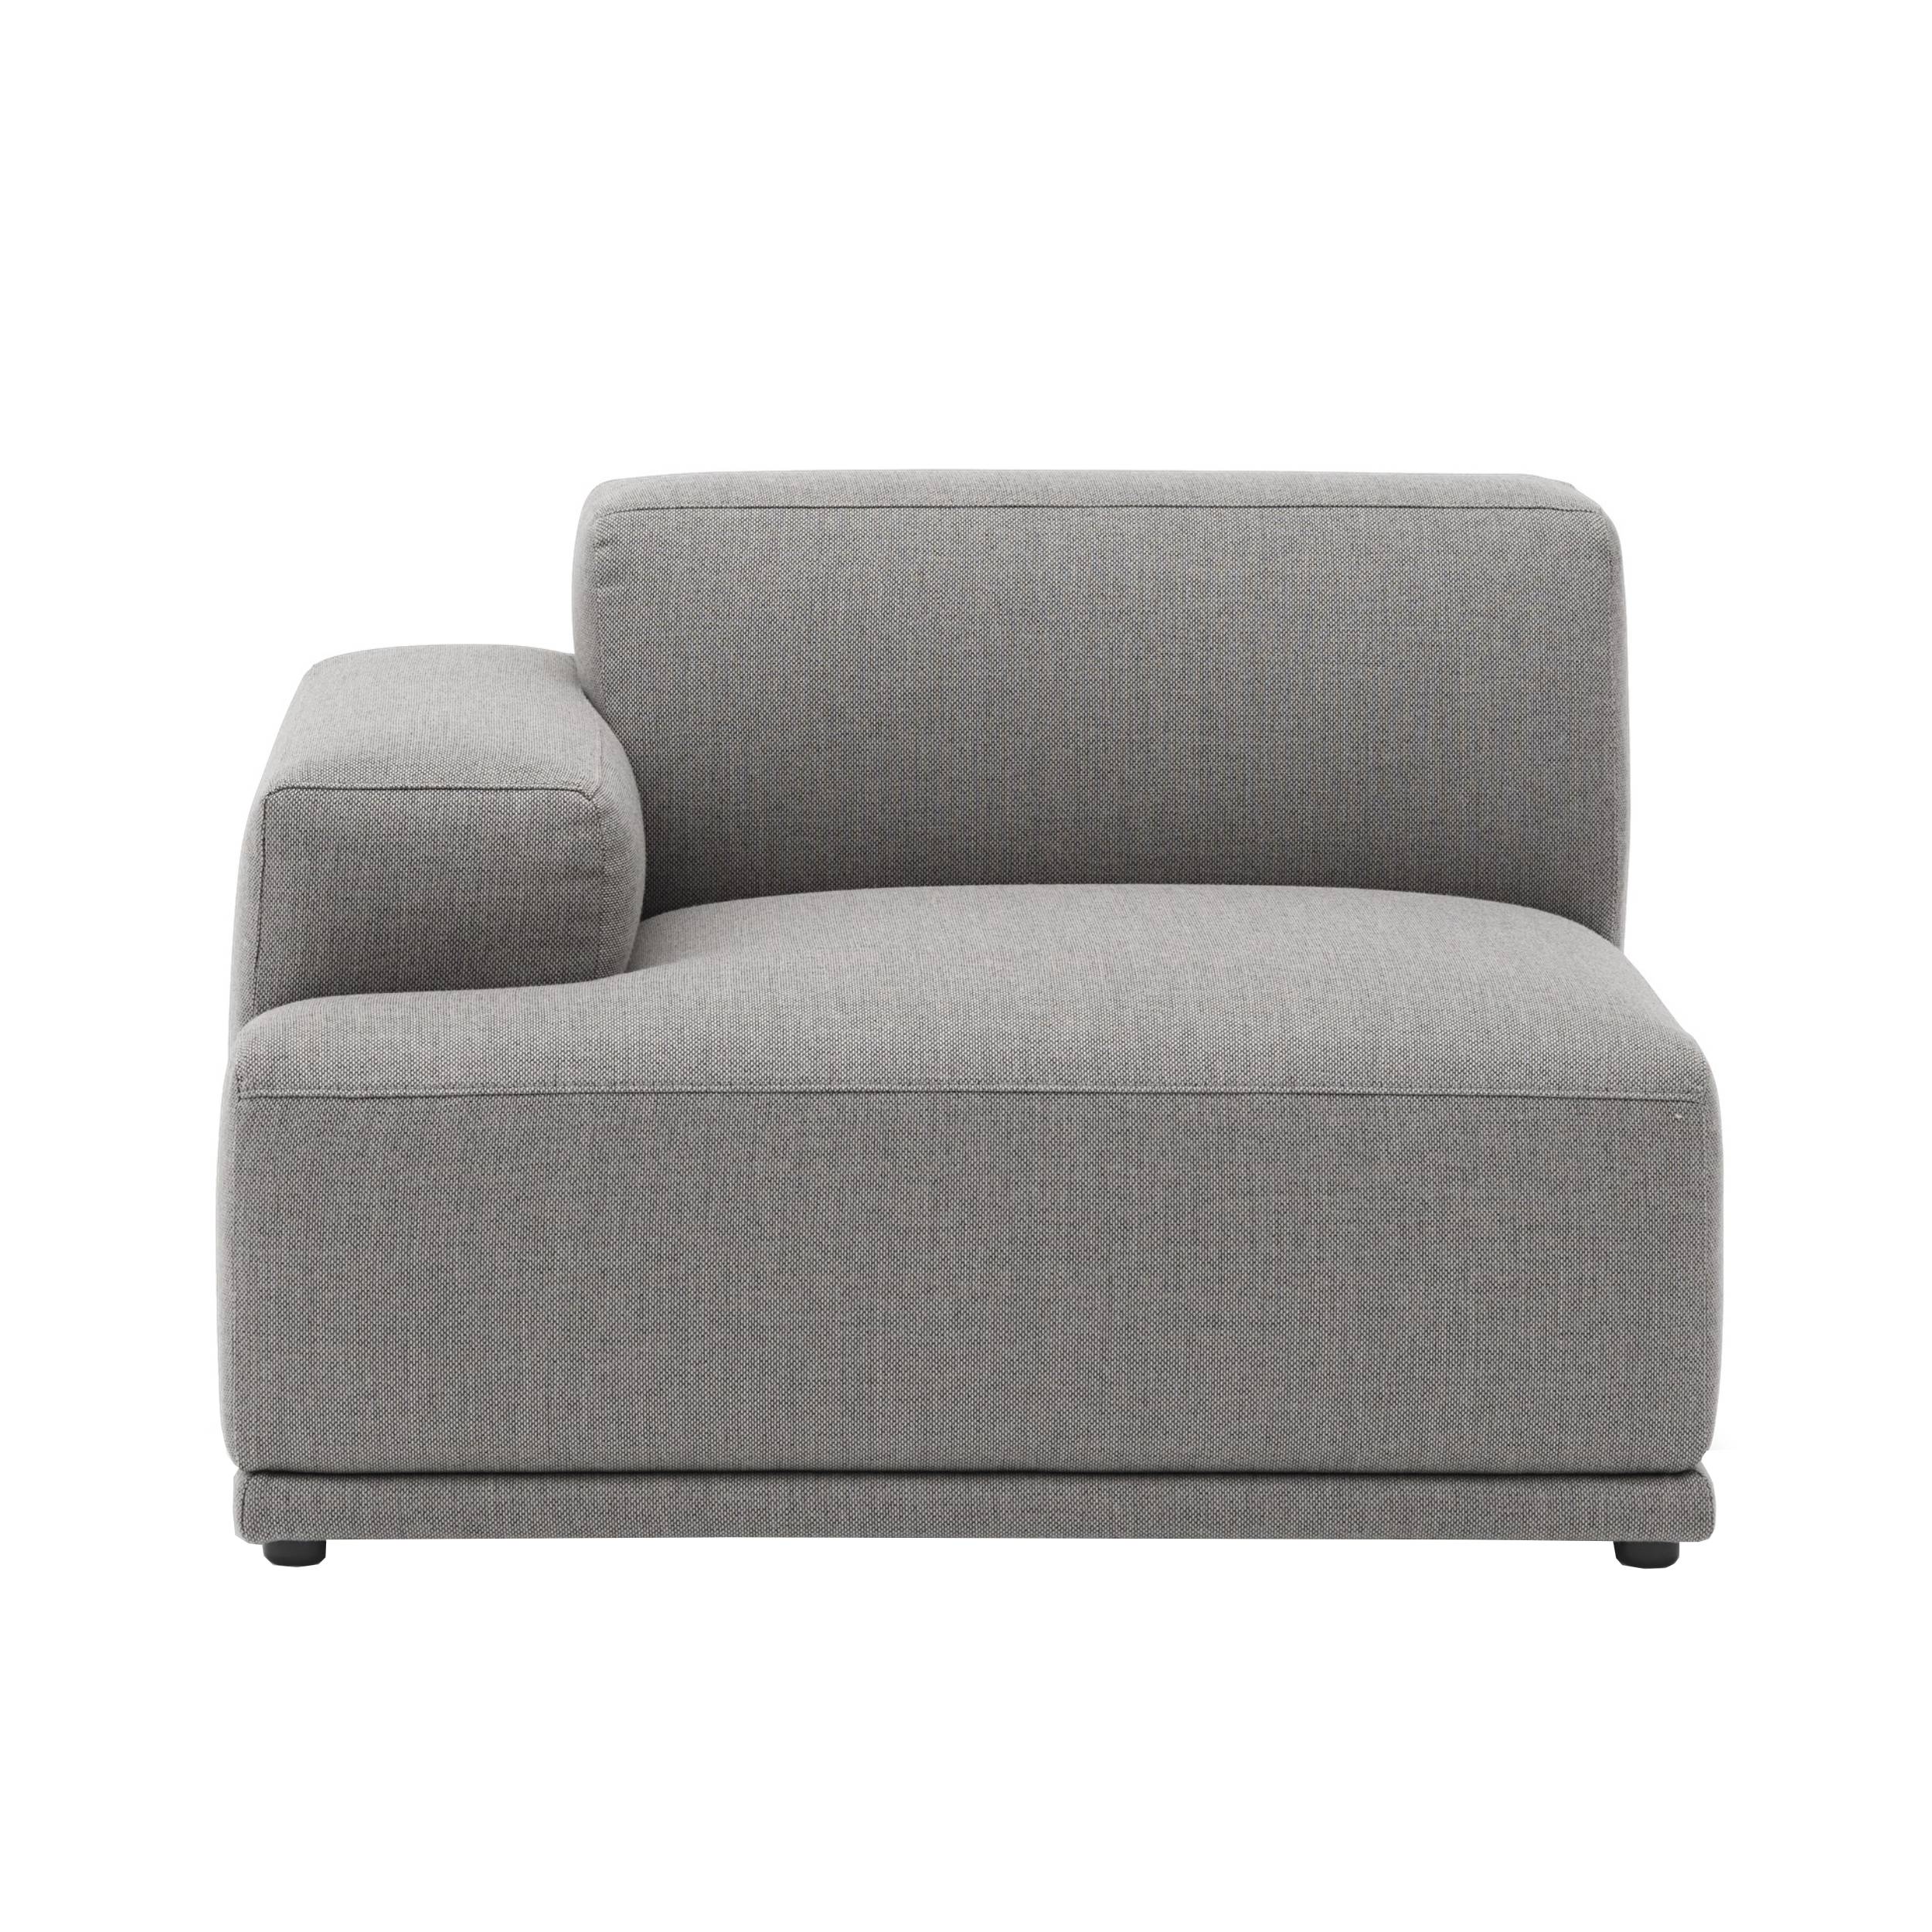 Connect Soft Sofa Modules: Left Armrest A